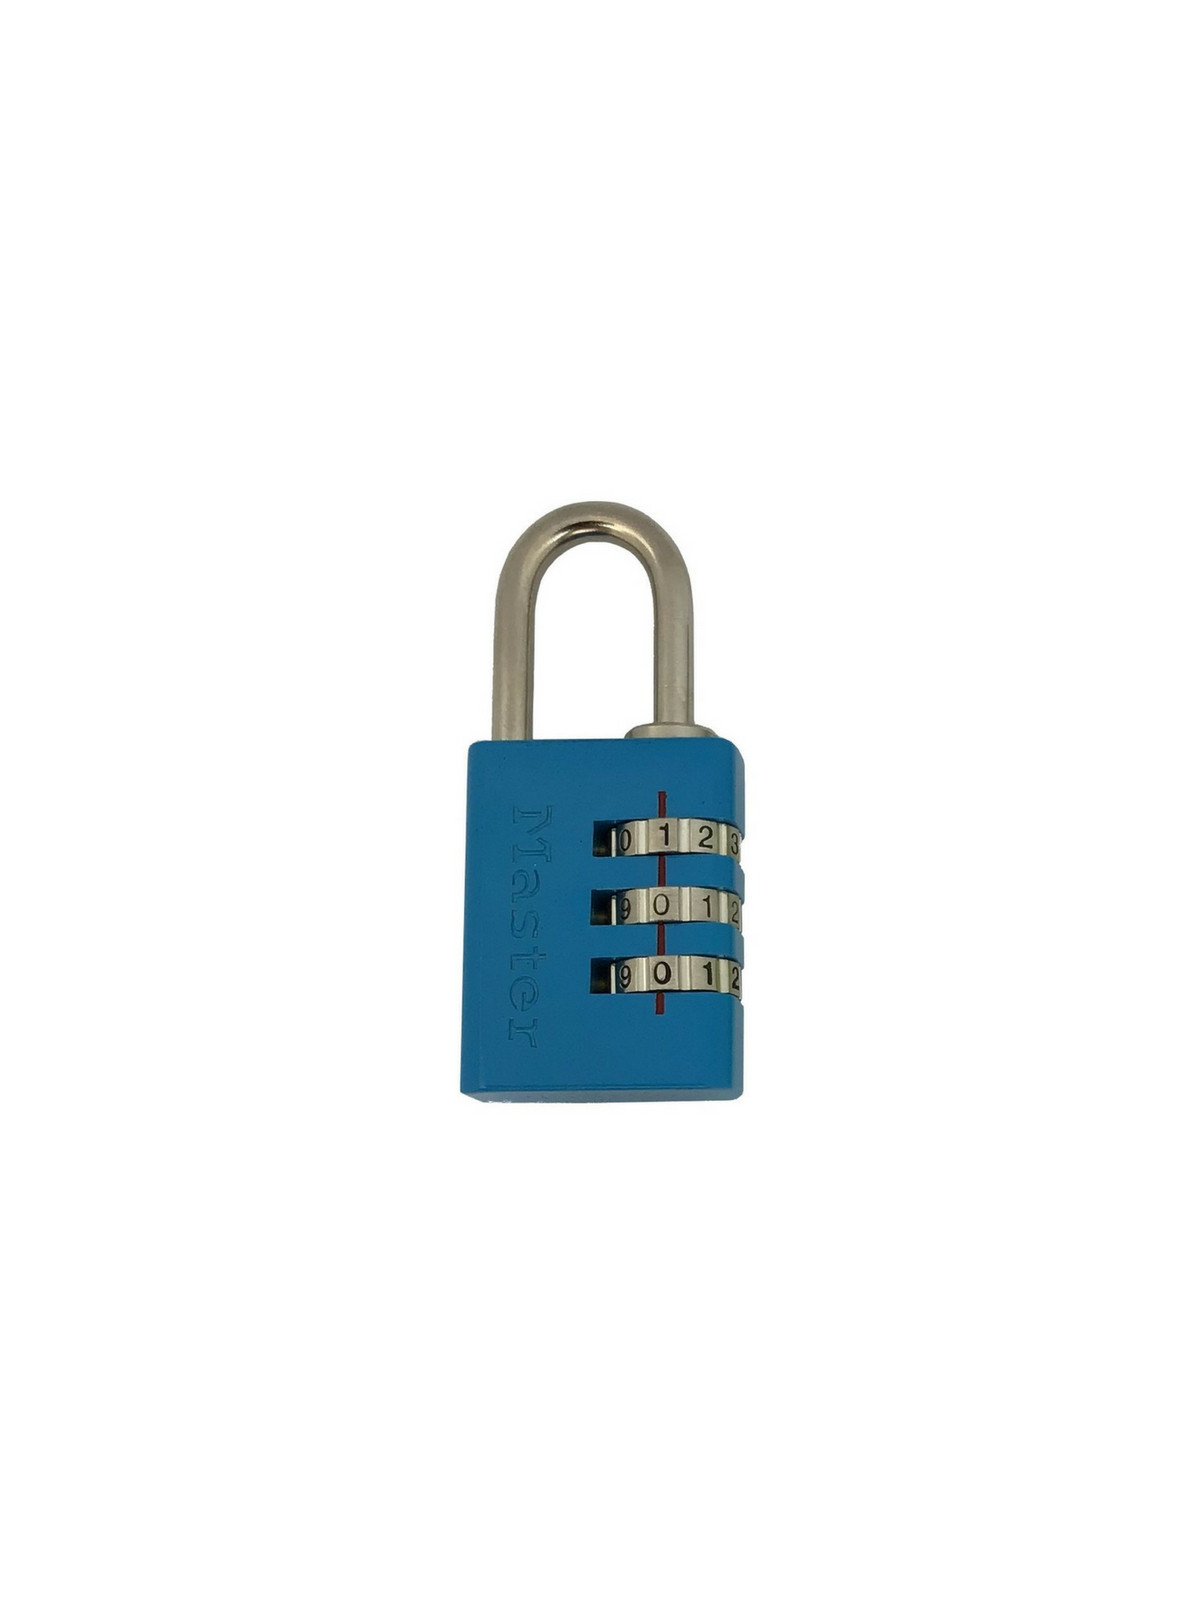 Cadenas à combinaison couleur Master Lock 7630EURD bleu